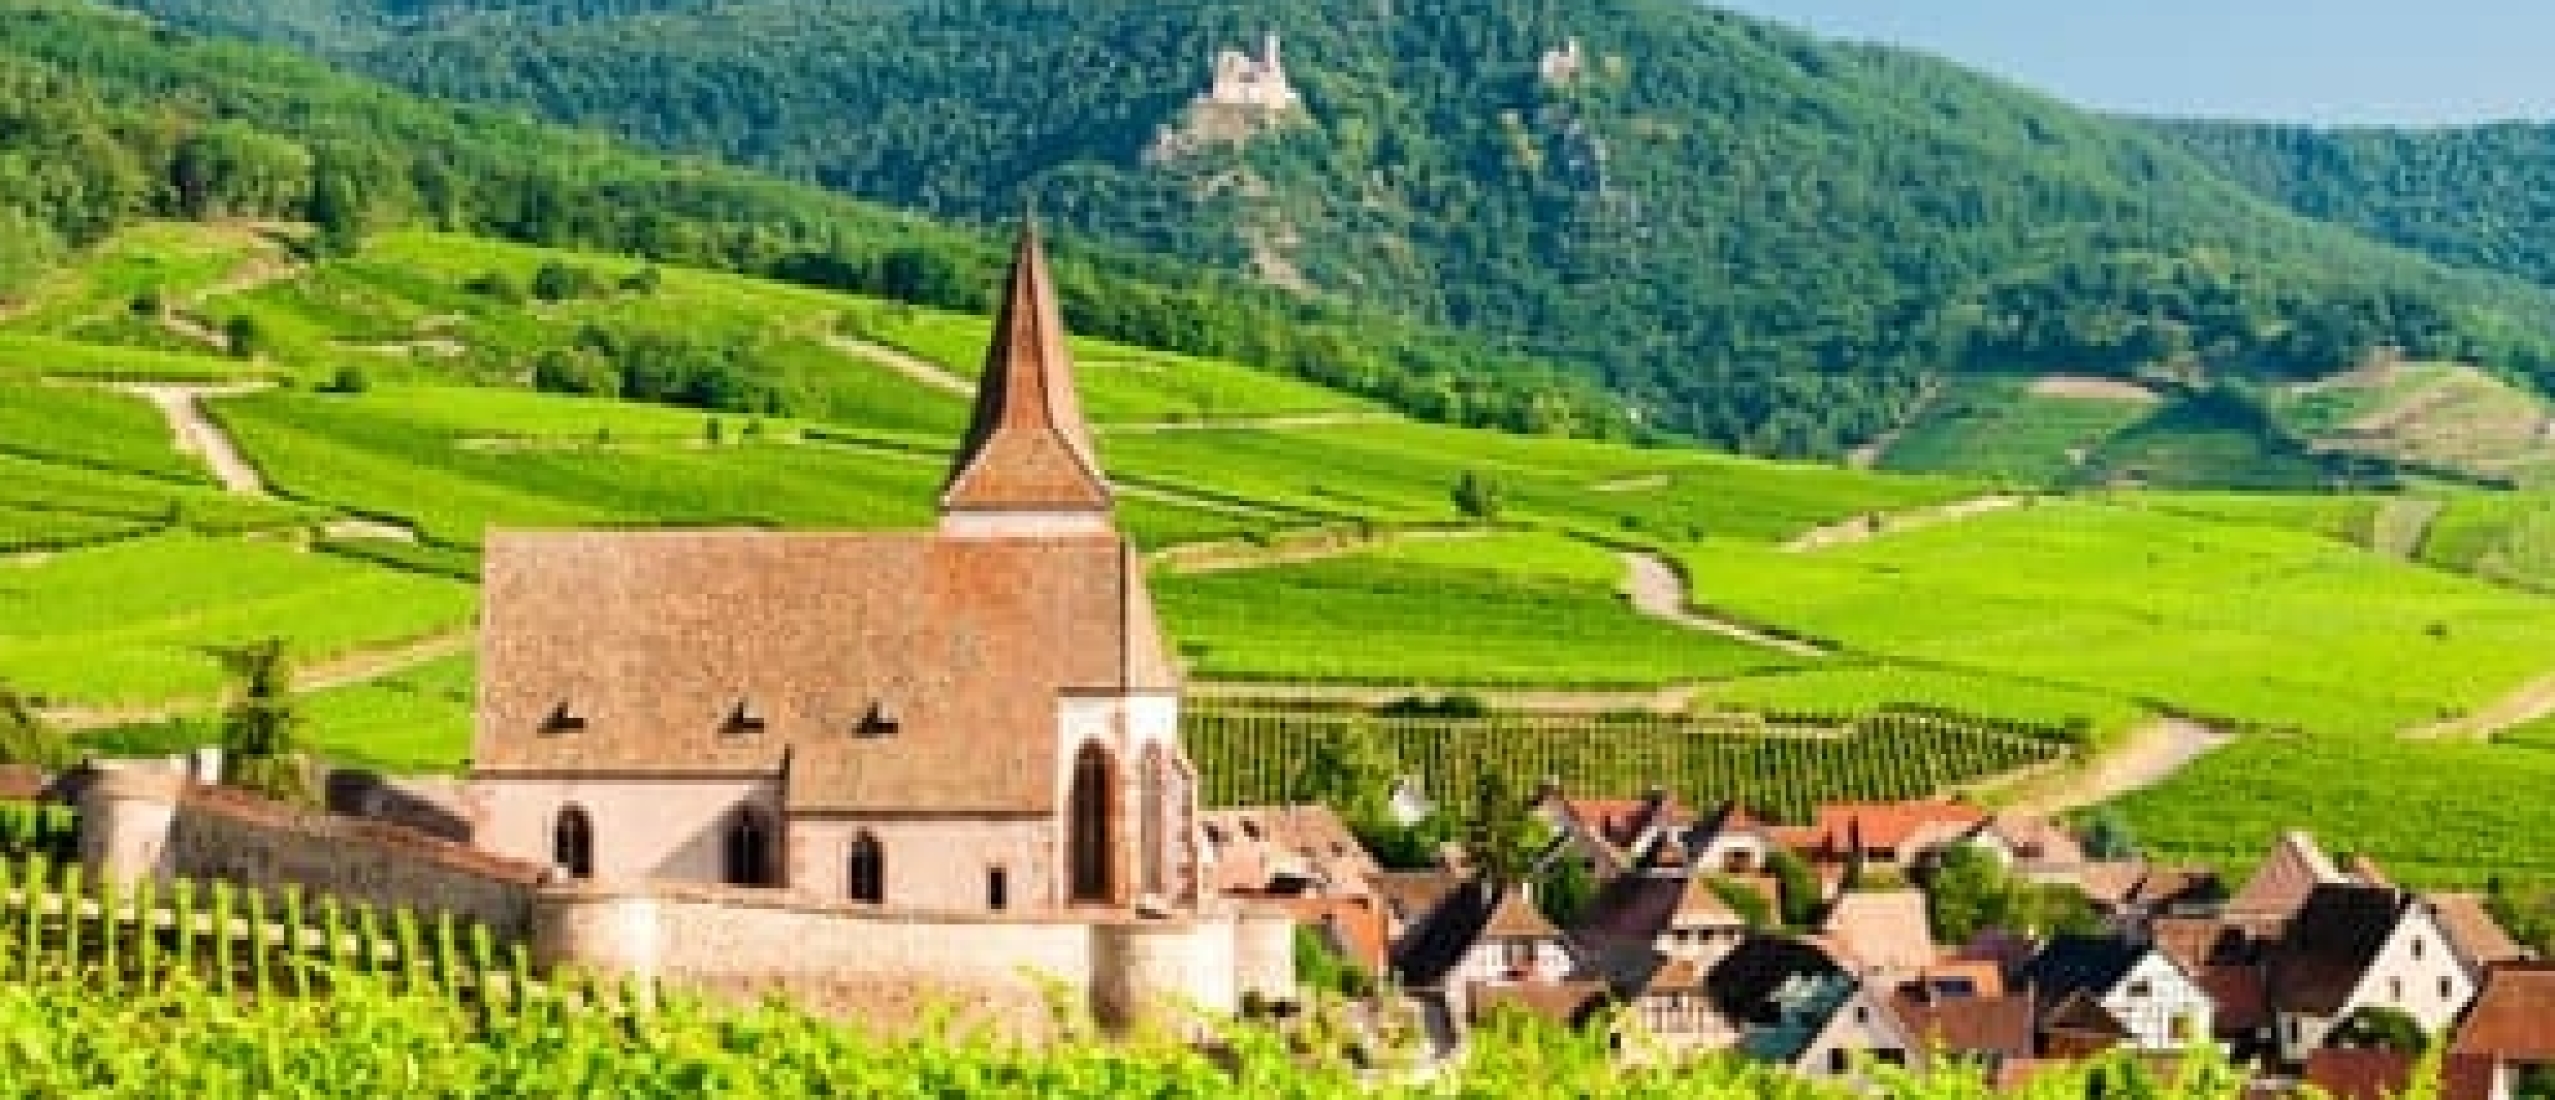 Onderweg naar Italië, Frankrijk of Spanje? Plan een pauze in de prachtige Alsace.